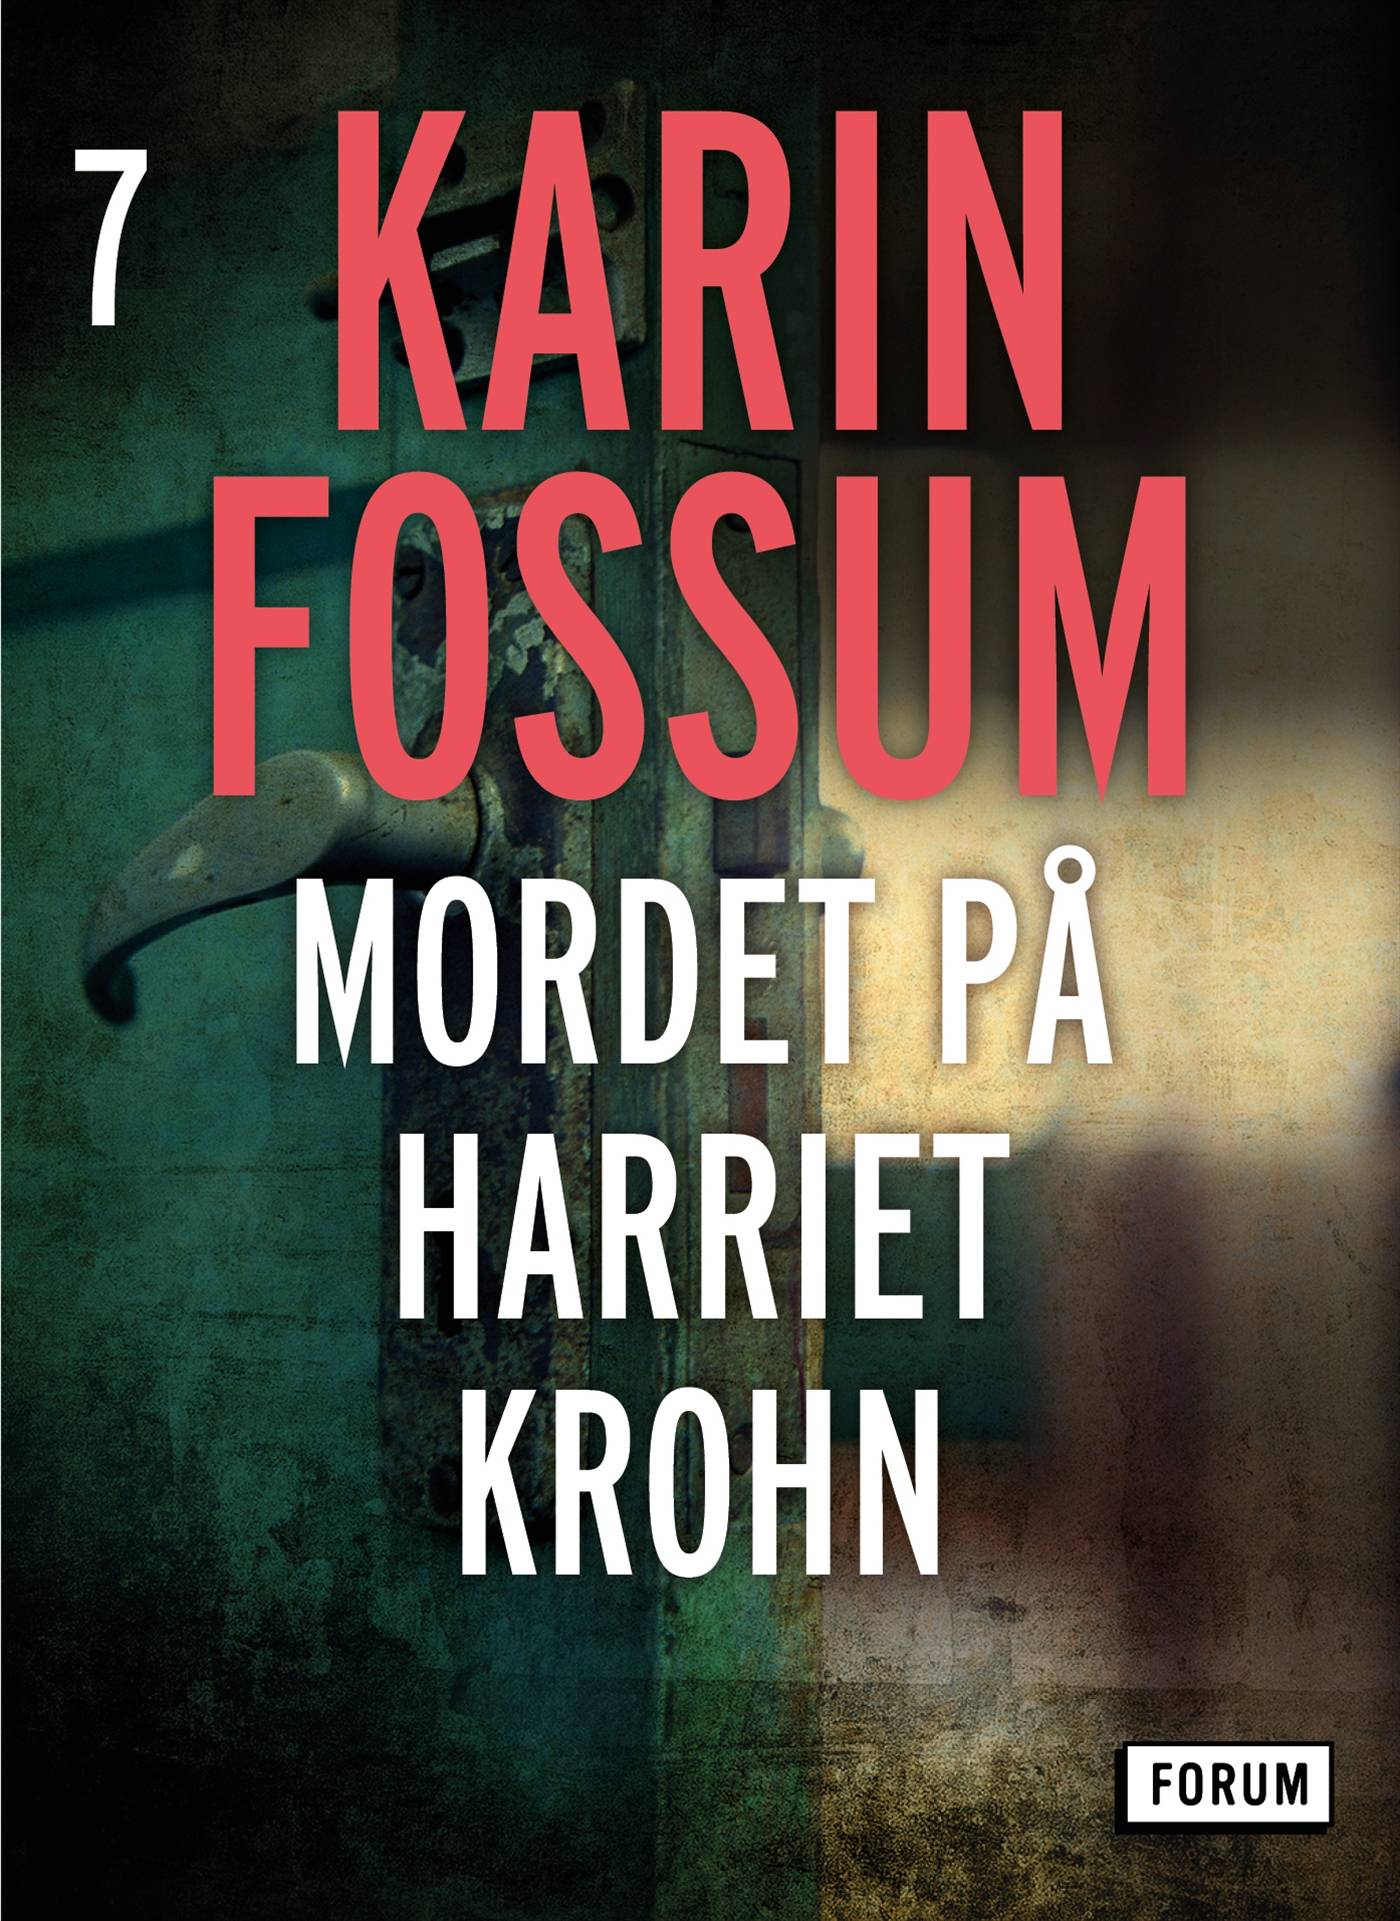 Mordet på Harriet Krohn